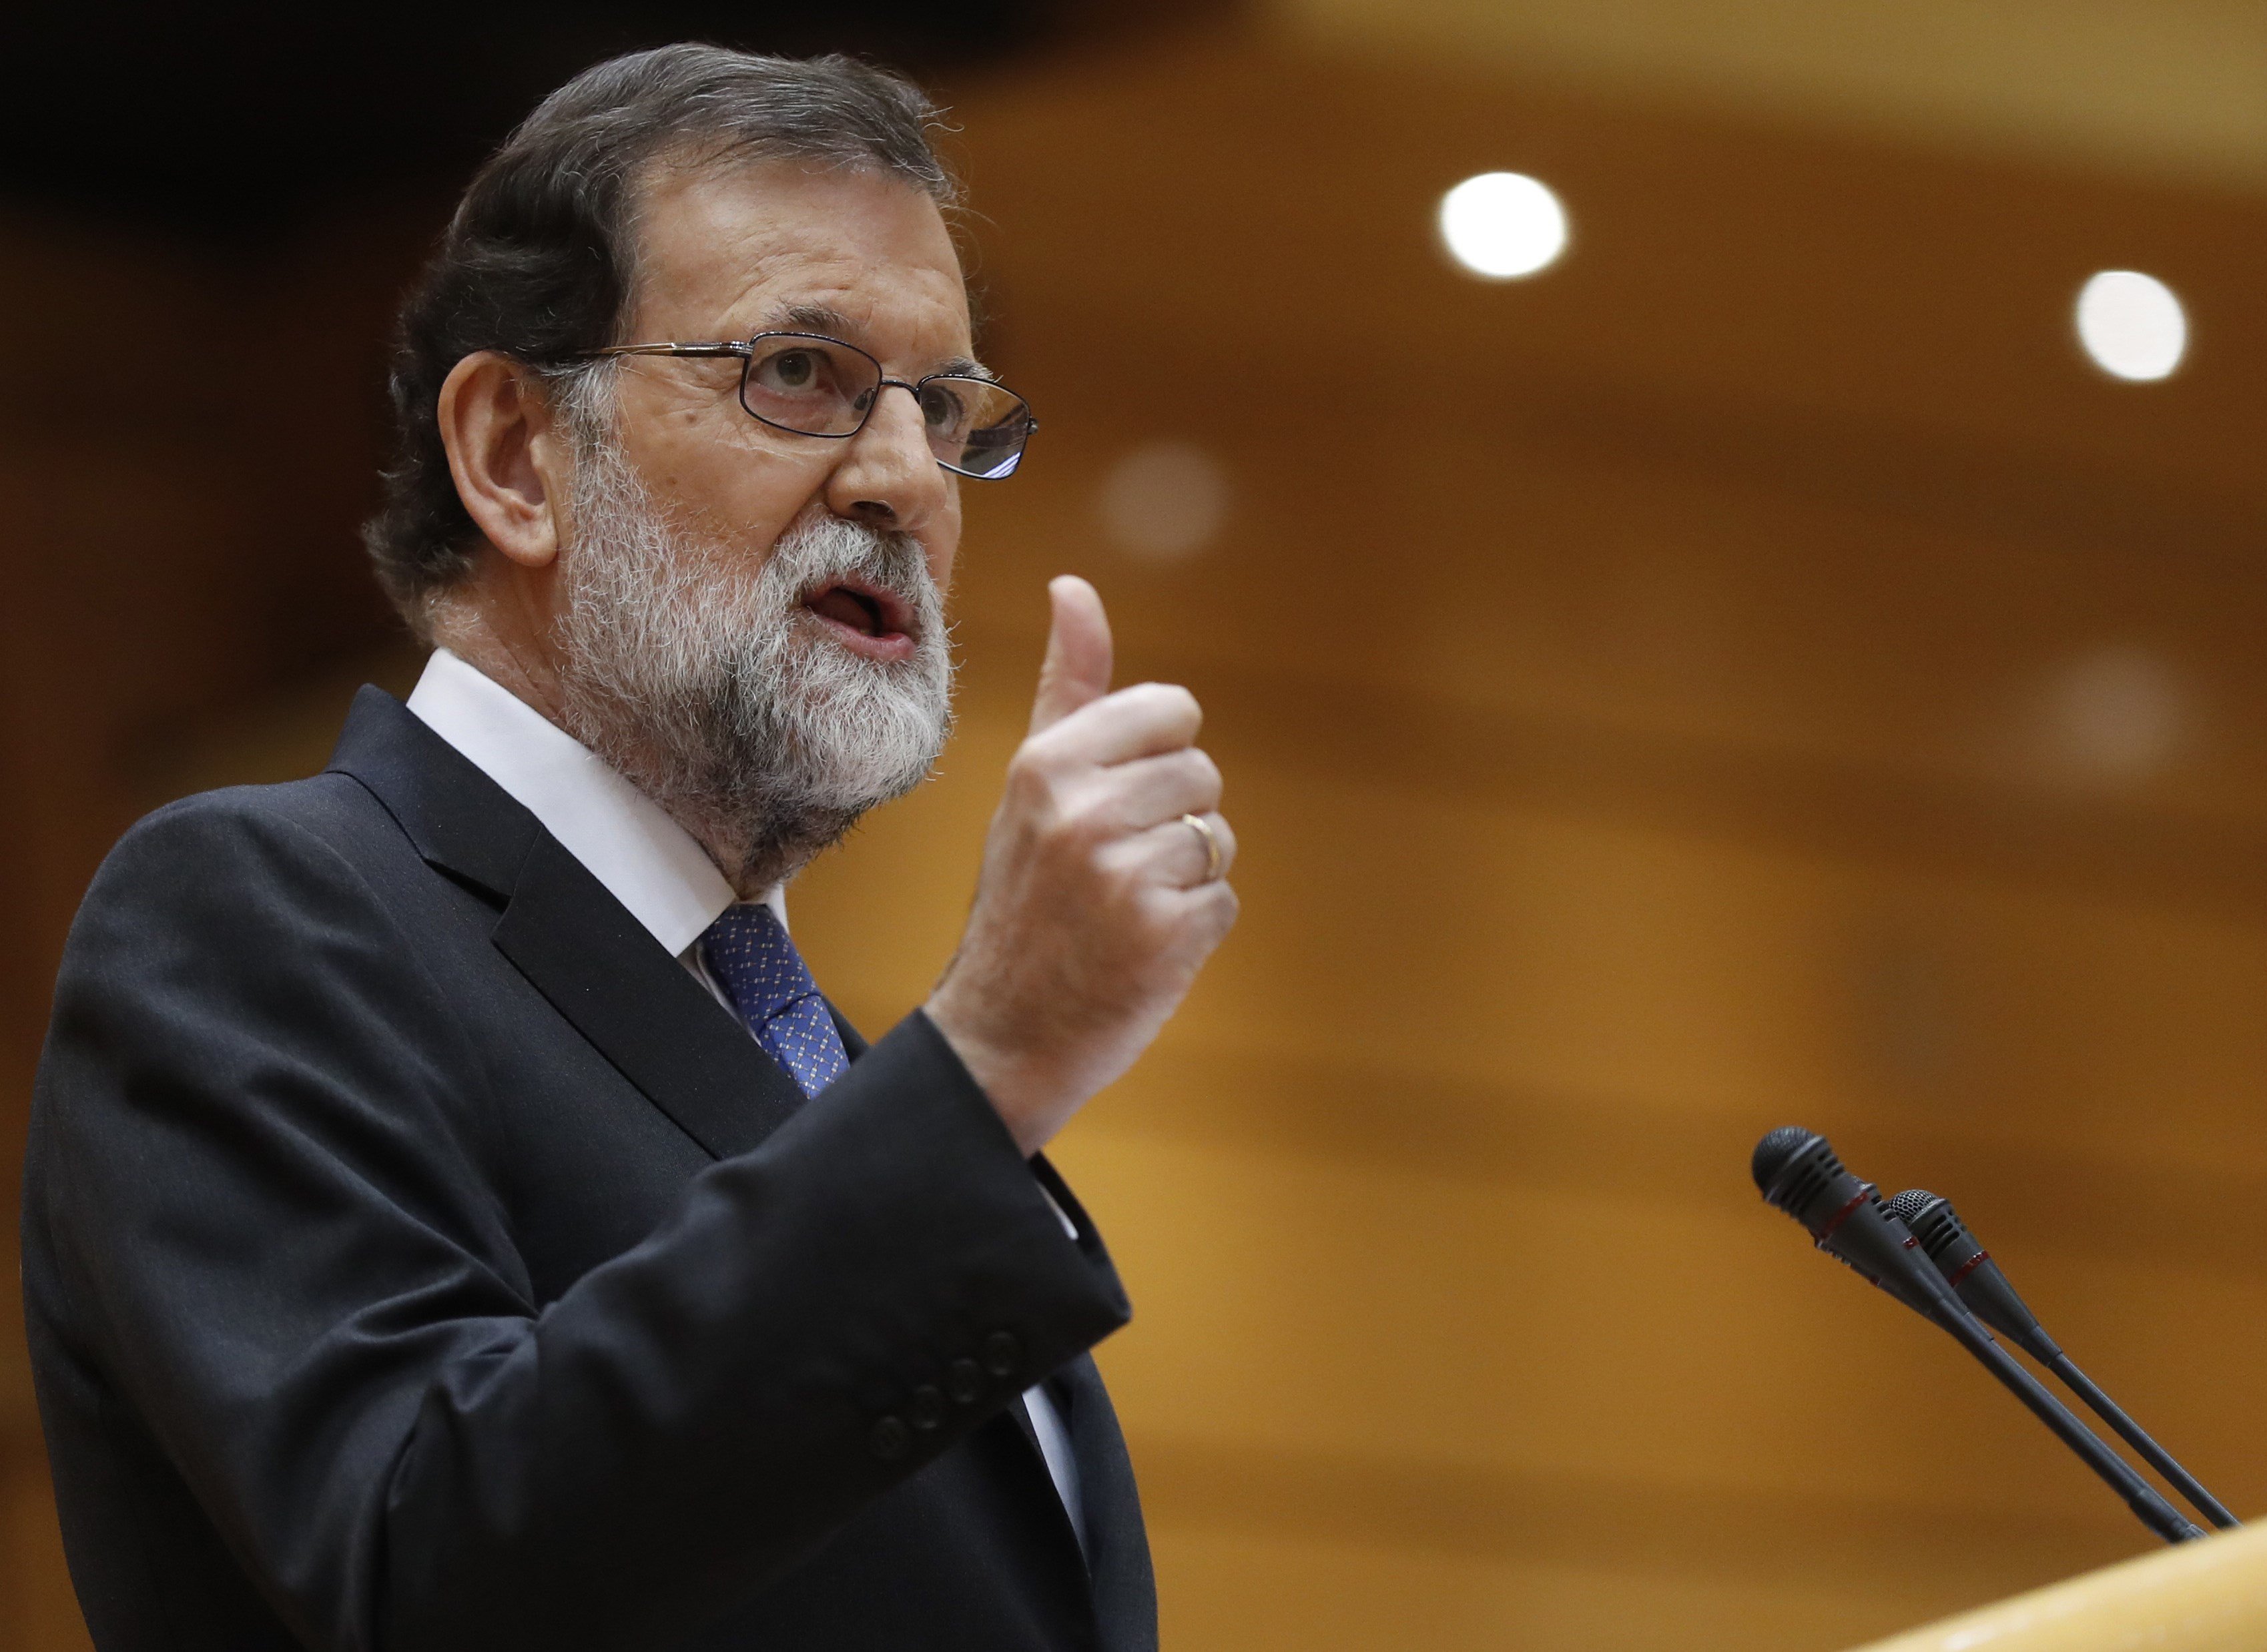 Rajoy respectarà el que decideixi el TS sobre Forcadell tant si li agrada "més" com "menys"